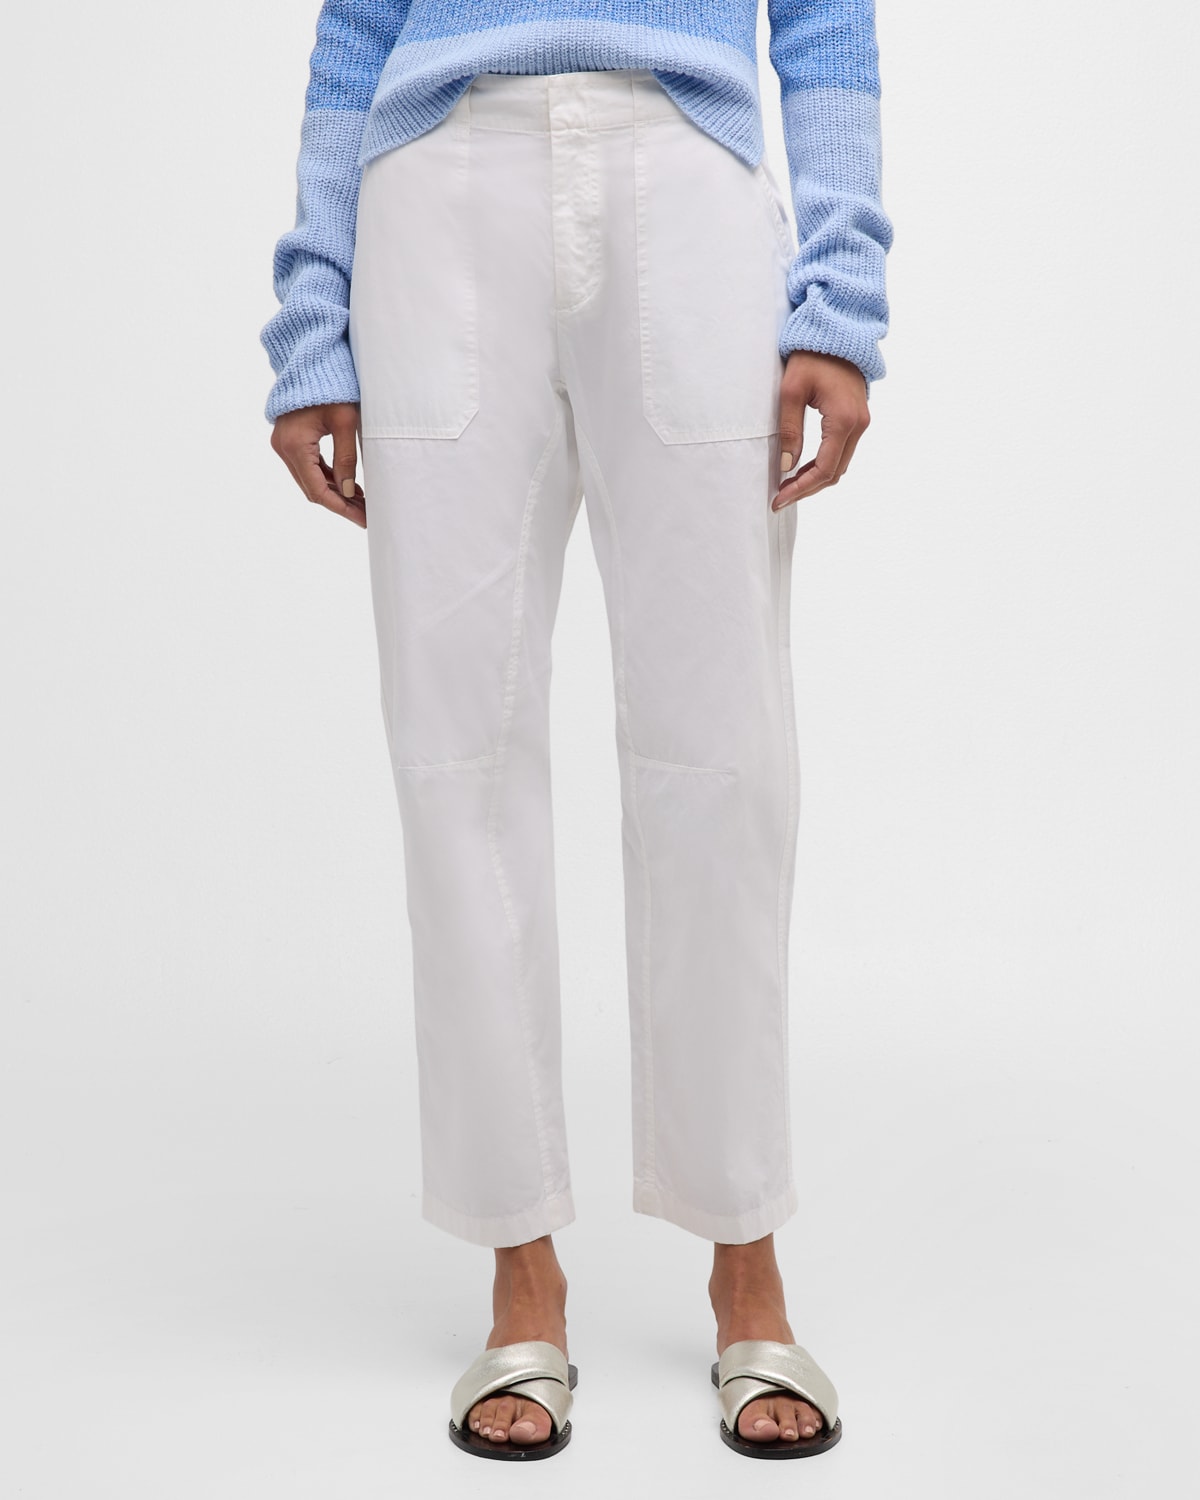 Leyton Workwear Cotton Pants